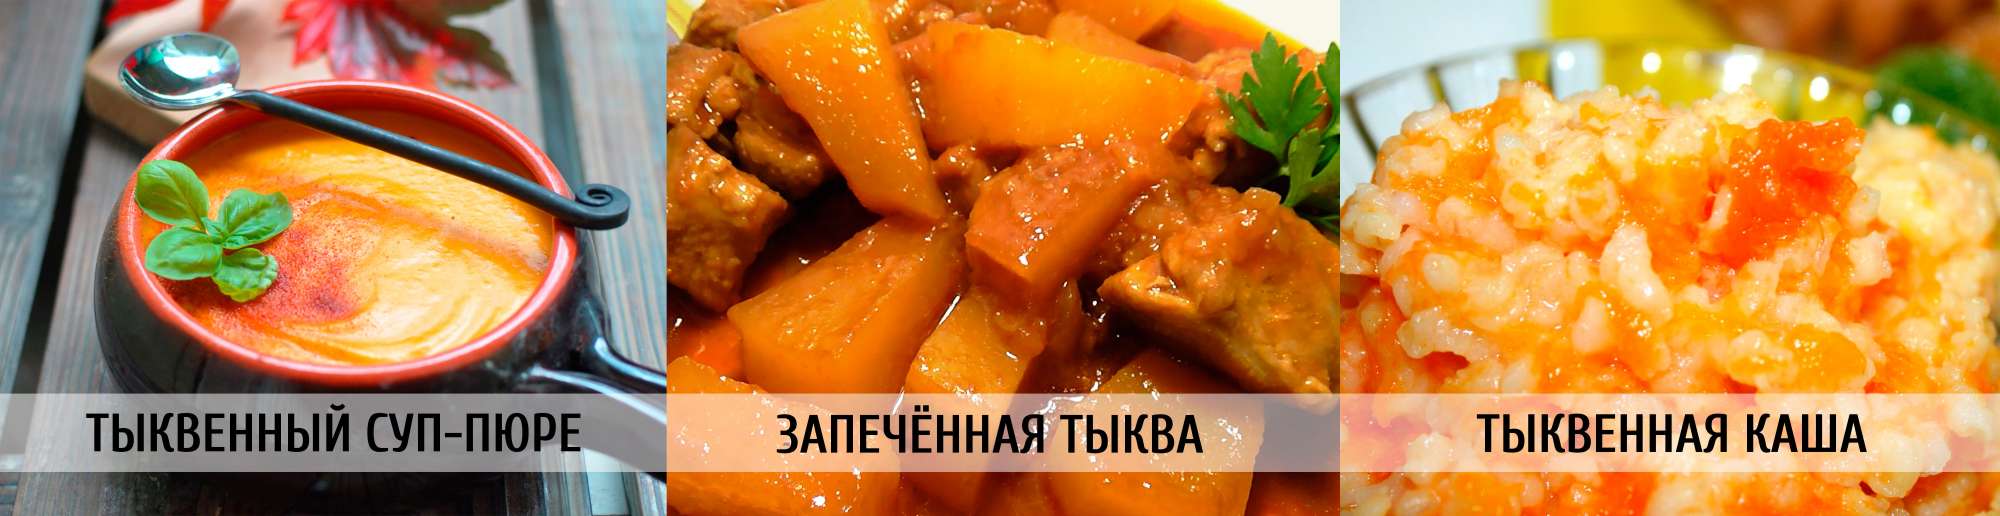 Сколько калорий в тыкве, запеченной в духовке (без сахара)?   | mnogoli.ru